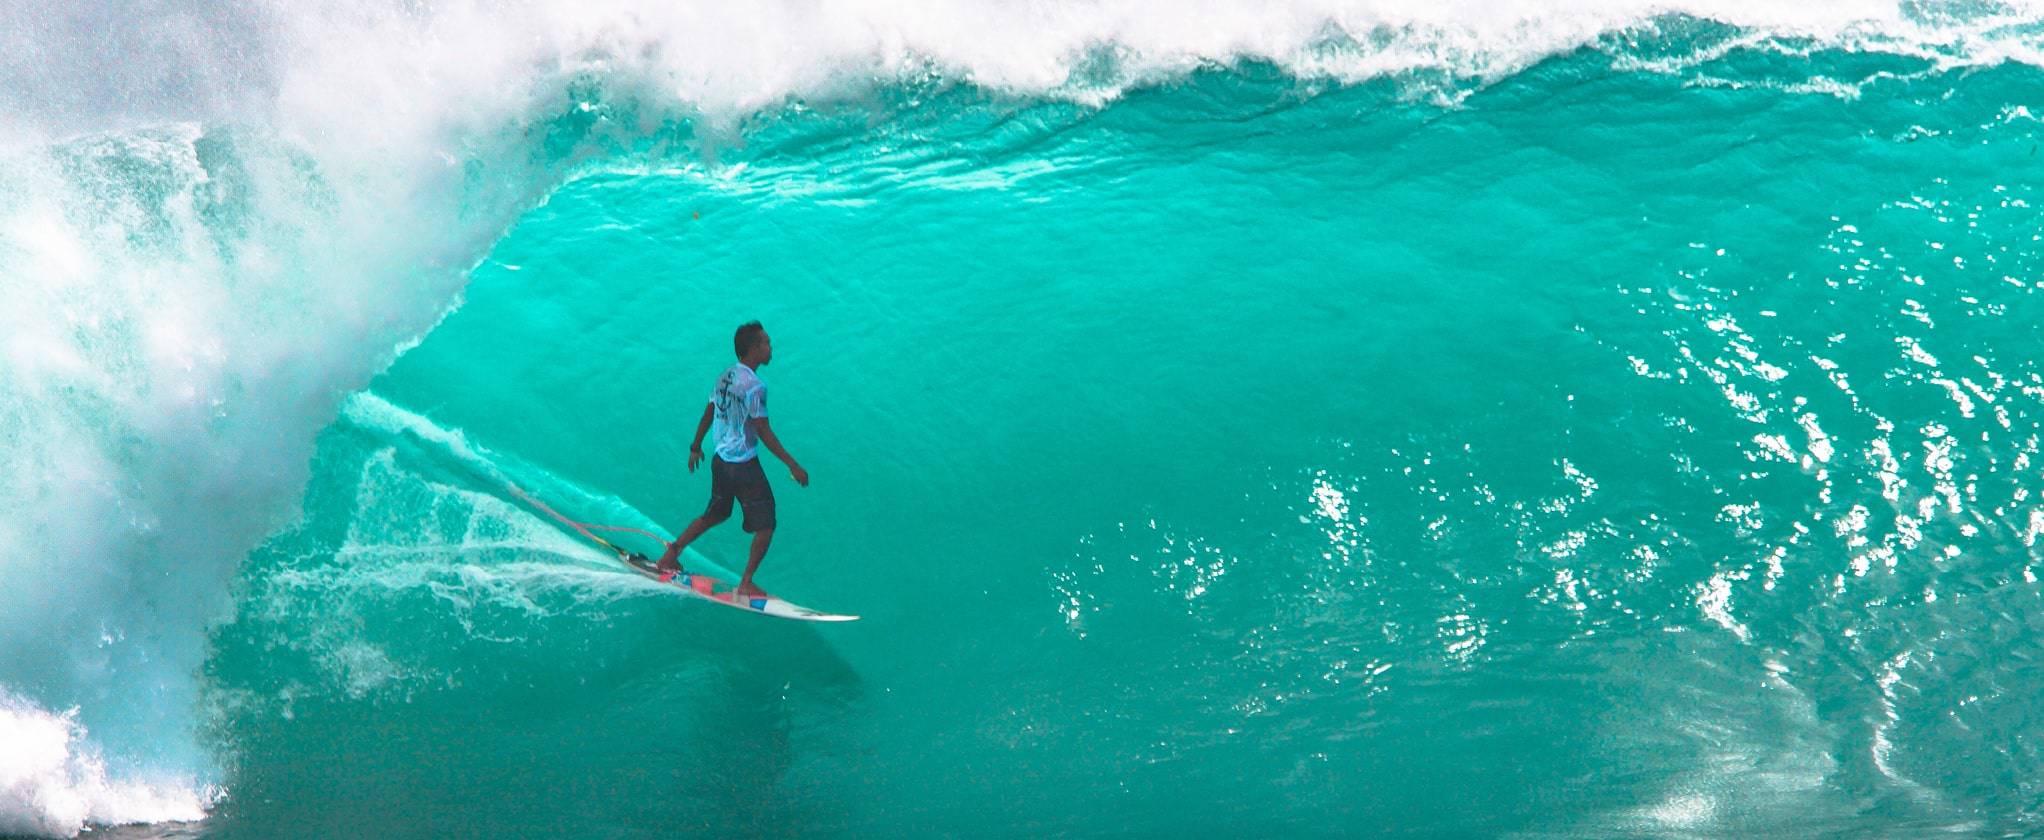 The best surf spots in Bali